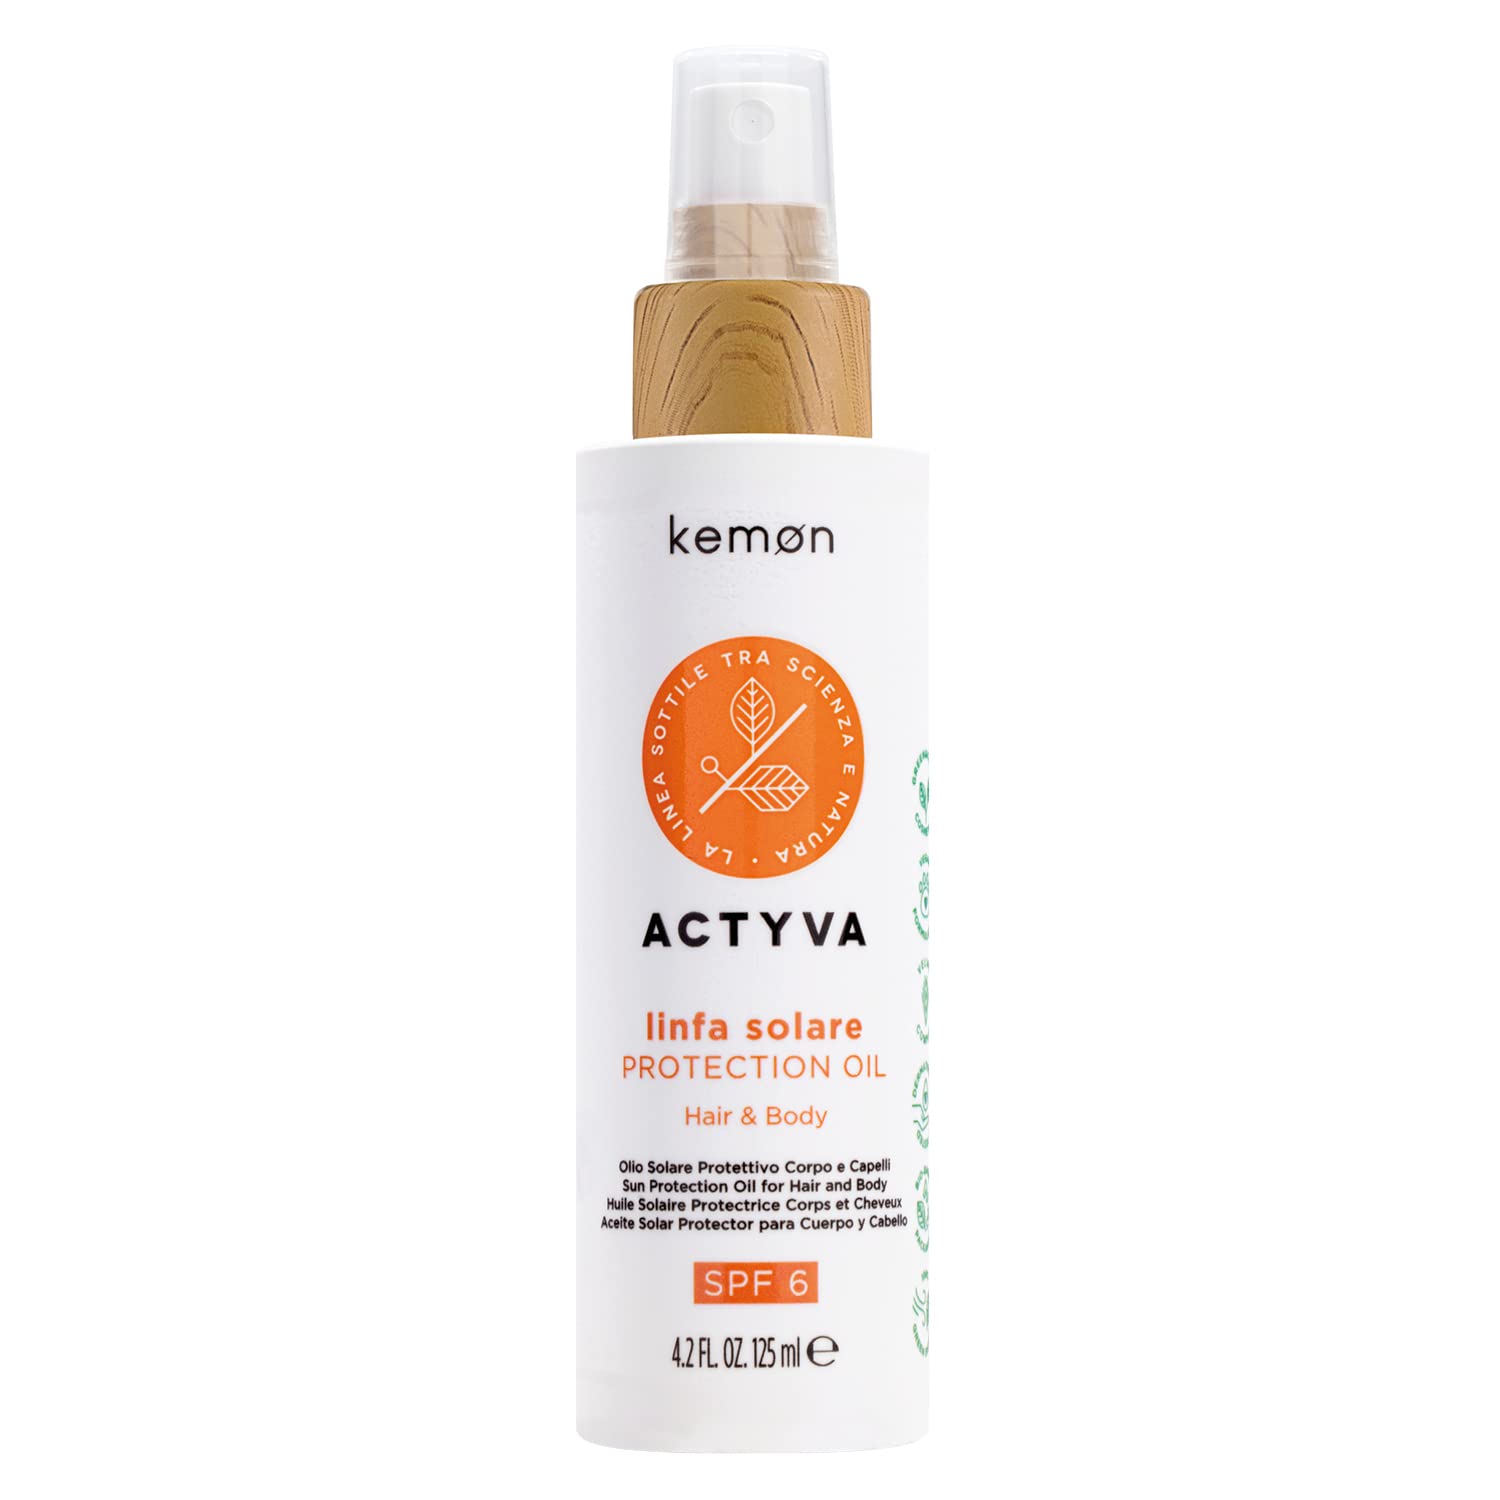 Kemon Actyva Linfa Solare Protection Oil SPF 6 - Pflegeöl für Körper und Haar, Sonnenschutz, Haar-Öl und Sun Body Oil in Einem, LSF 6 - 125 ml